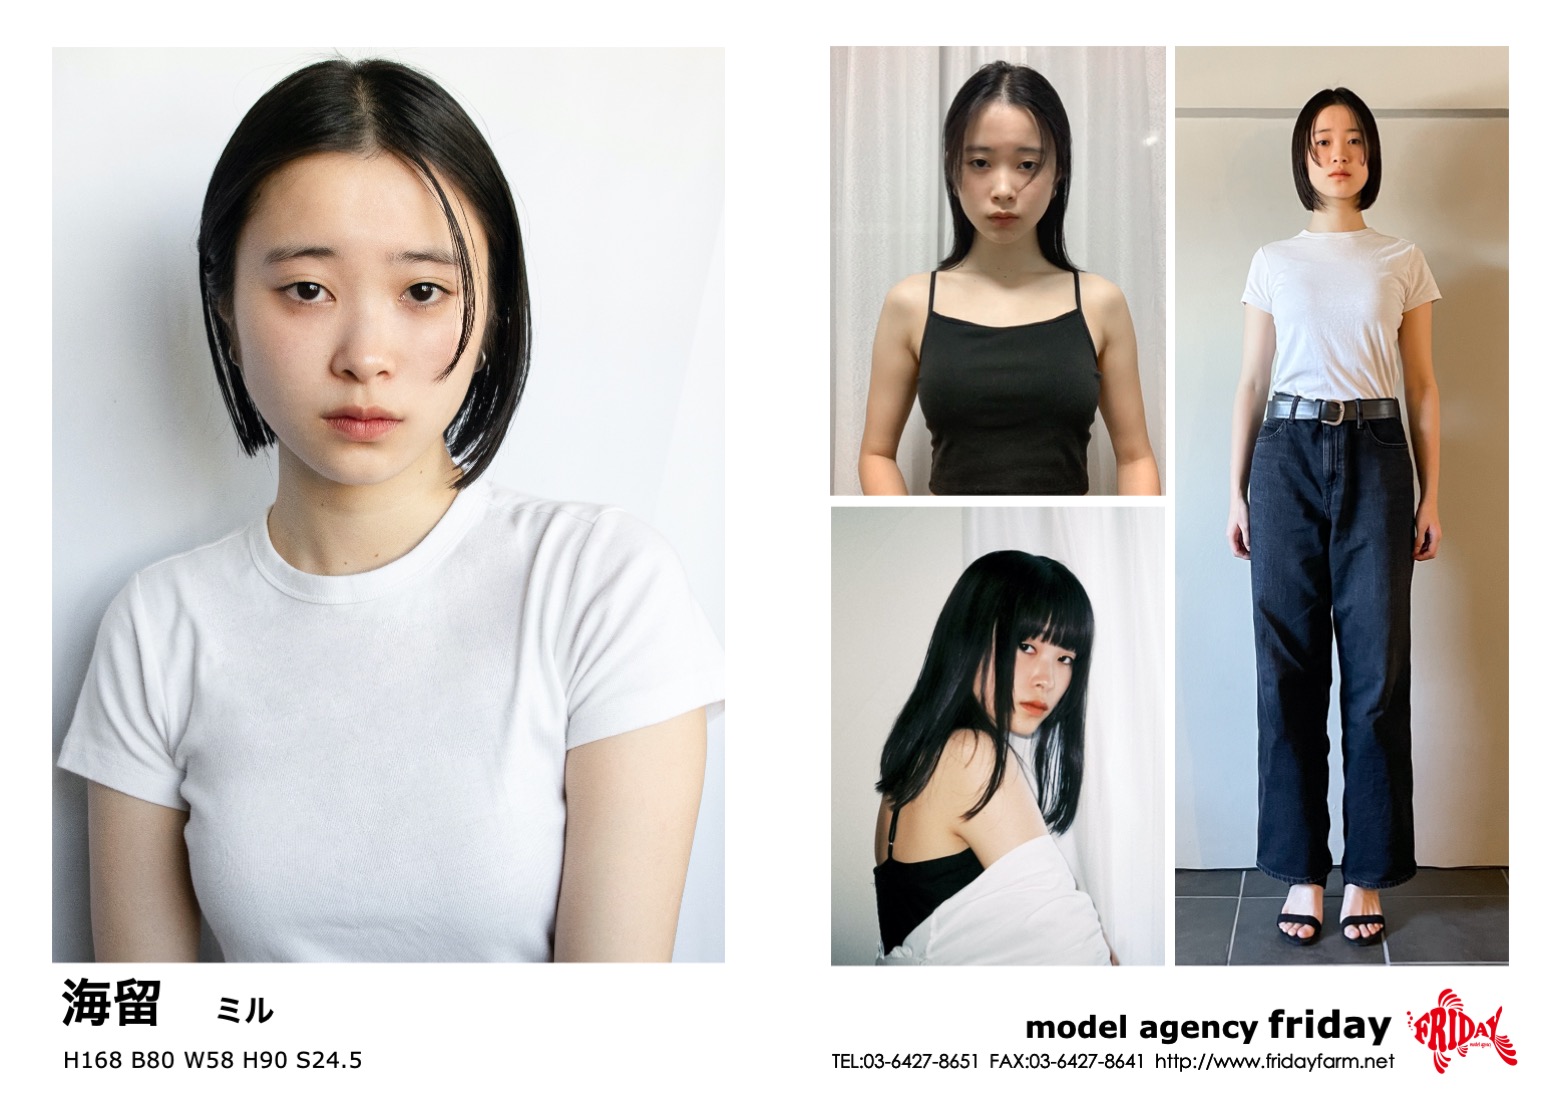 海留 - Miru | model agency friday